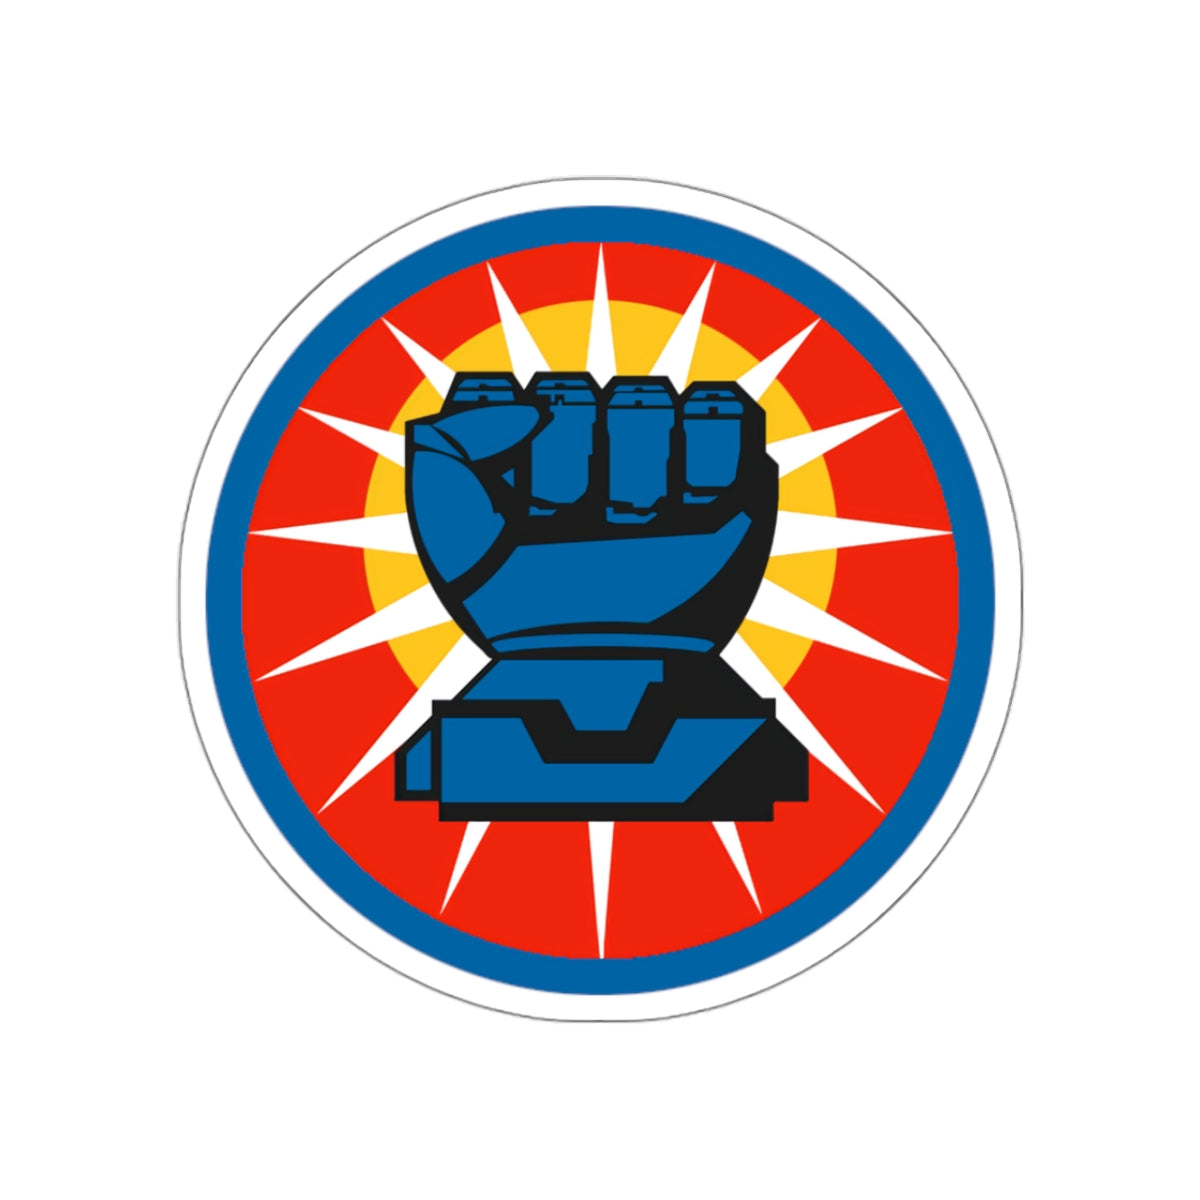 Sticker - The Common Blue Fist